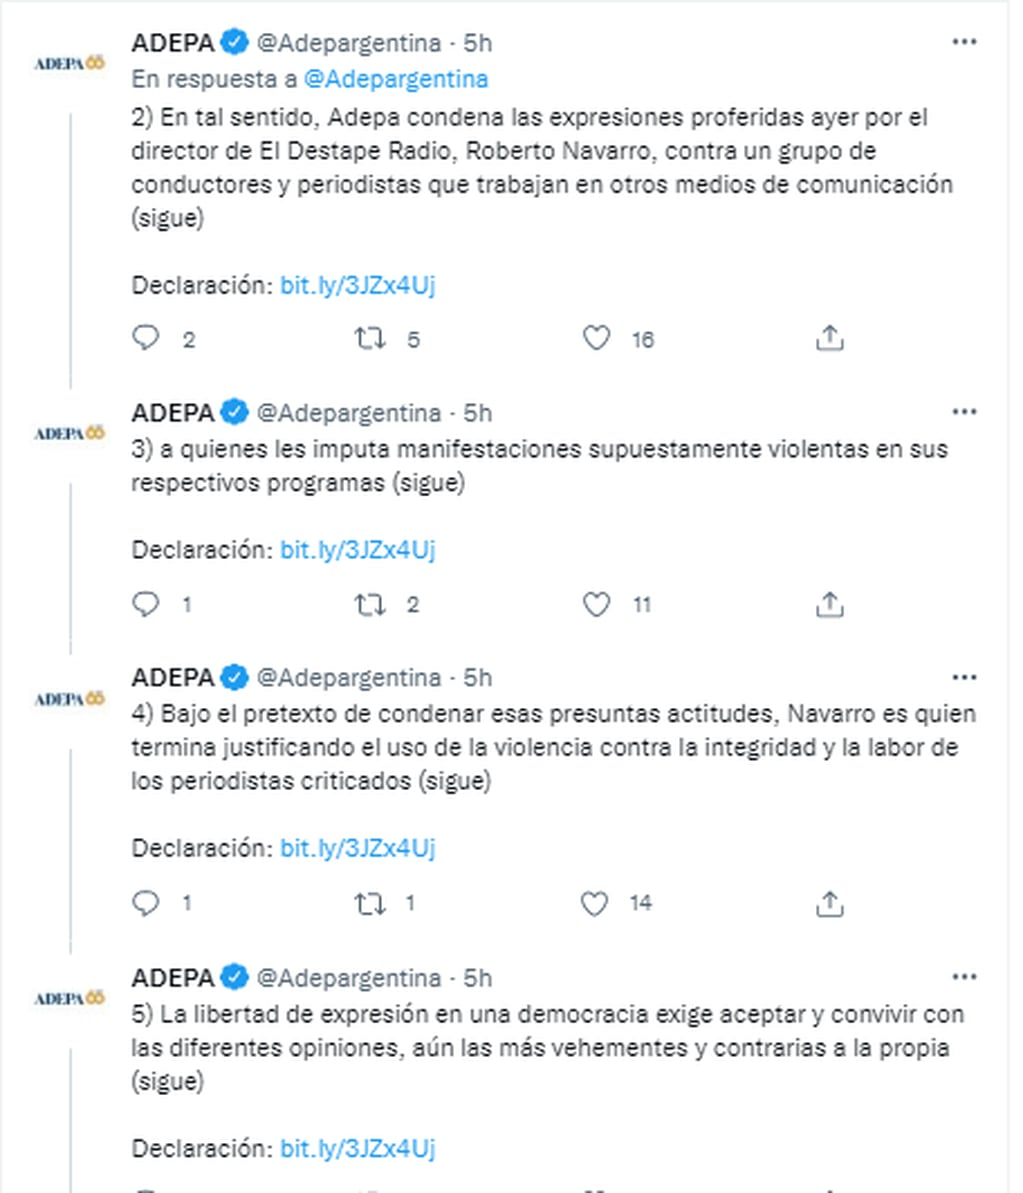 Tras los dichos de Roberto Navarro, La Asociación de Entidades periodísticas Argentina expresó su repudio sobre las declaraciones y apoyaron a los periodistas señalados.